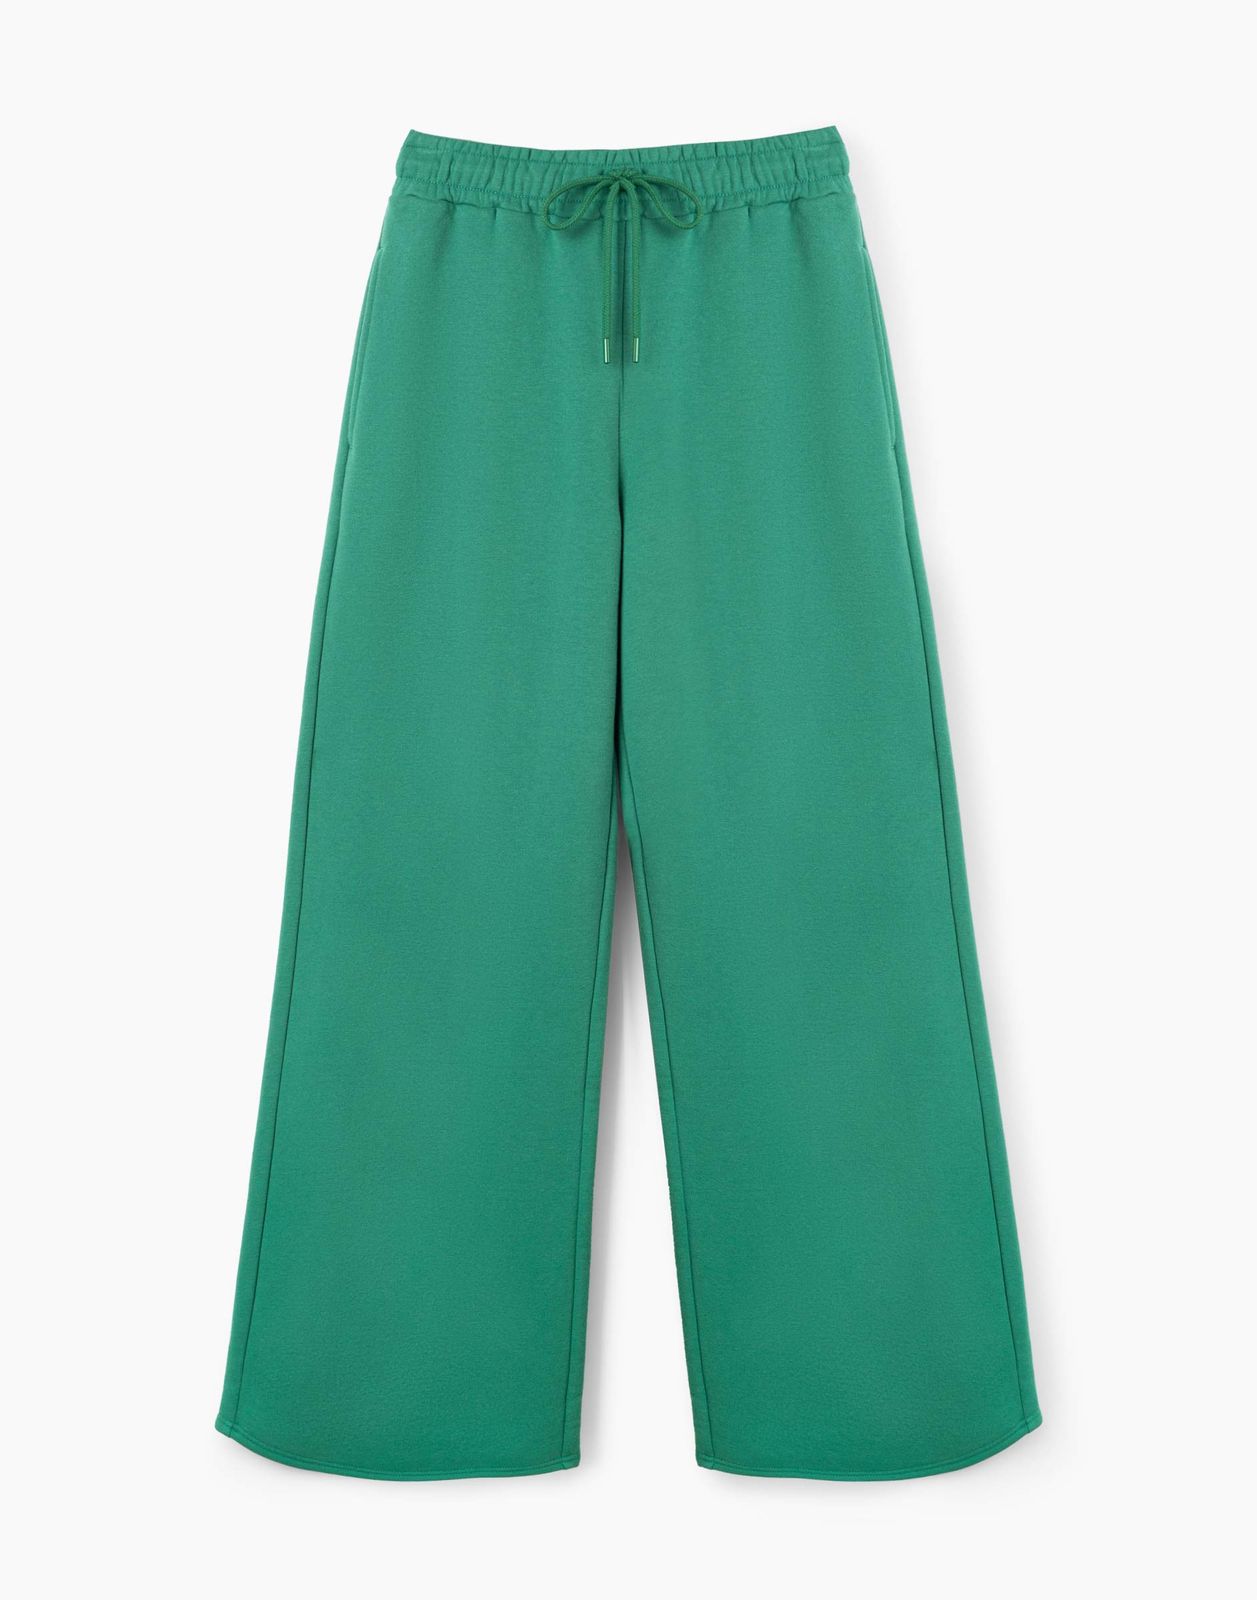 Спортивные брюки женские Gloria Jeans GAC020946 зеленые L/170 (48-50)